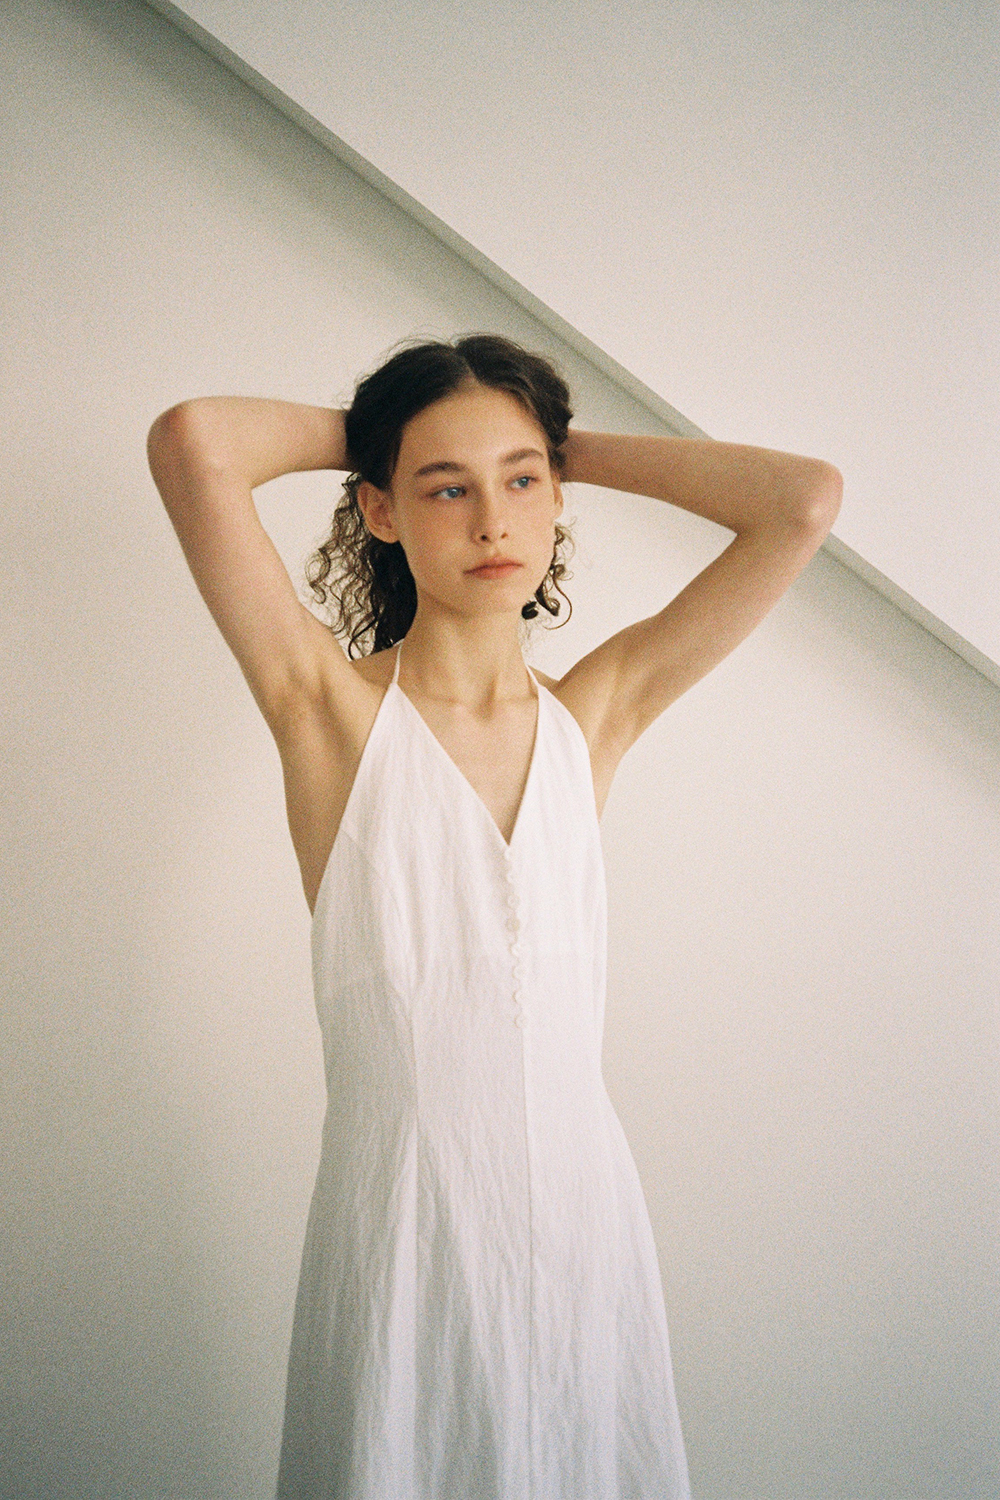 Sofia Halter Dress (white)